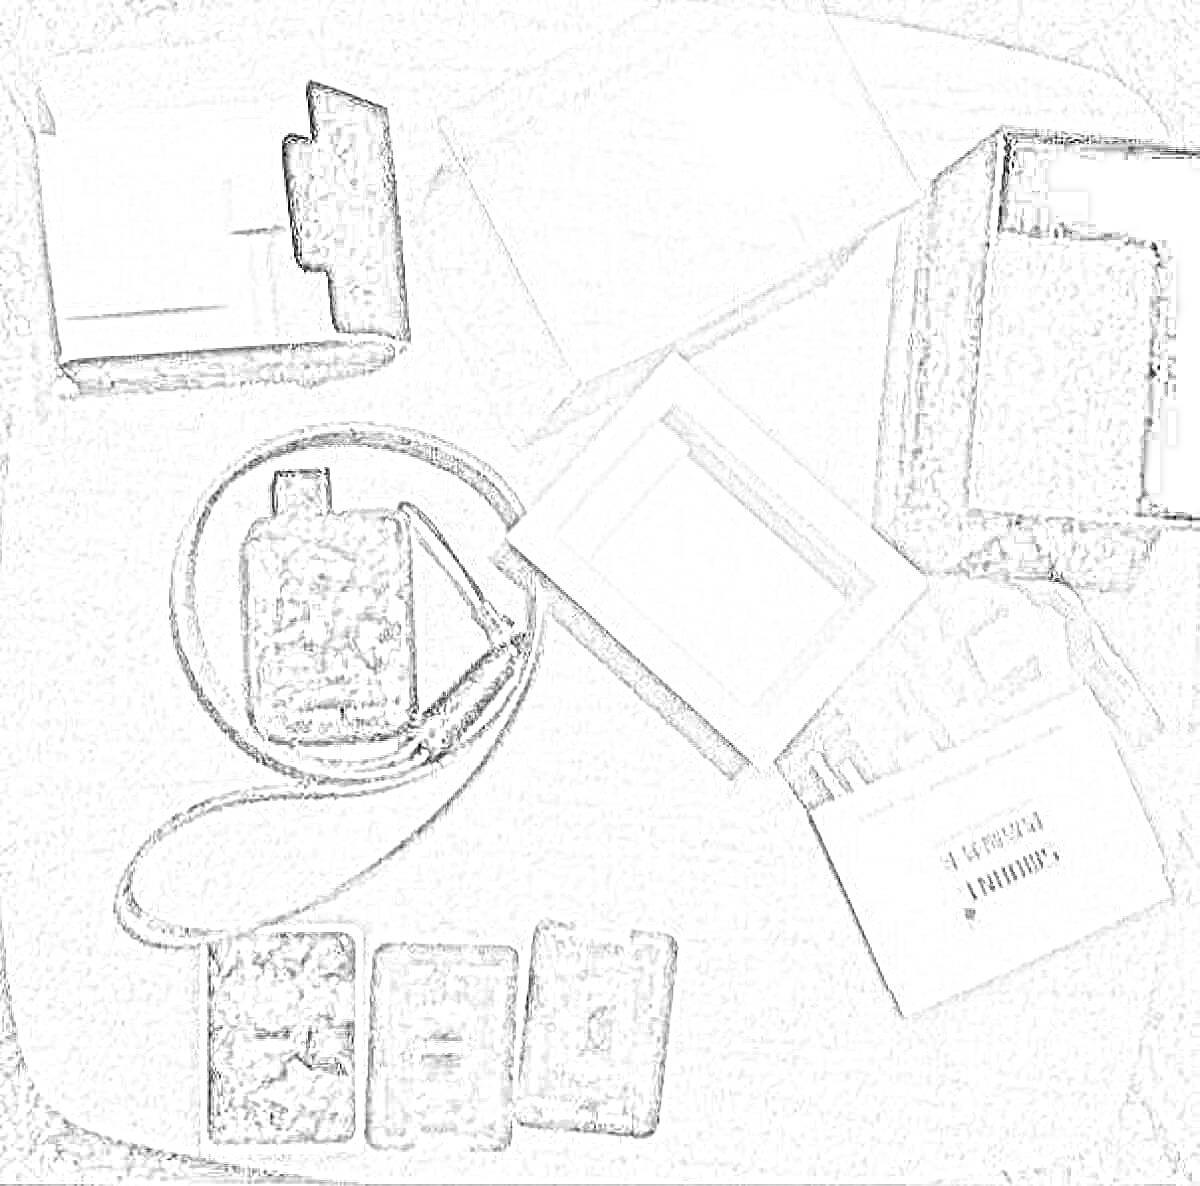 РаскраскаФото мистери бокс с коробкой, карточками, шейным шнурком и документами